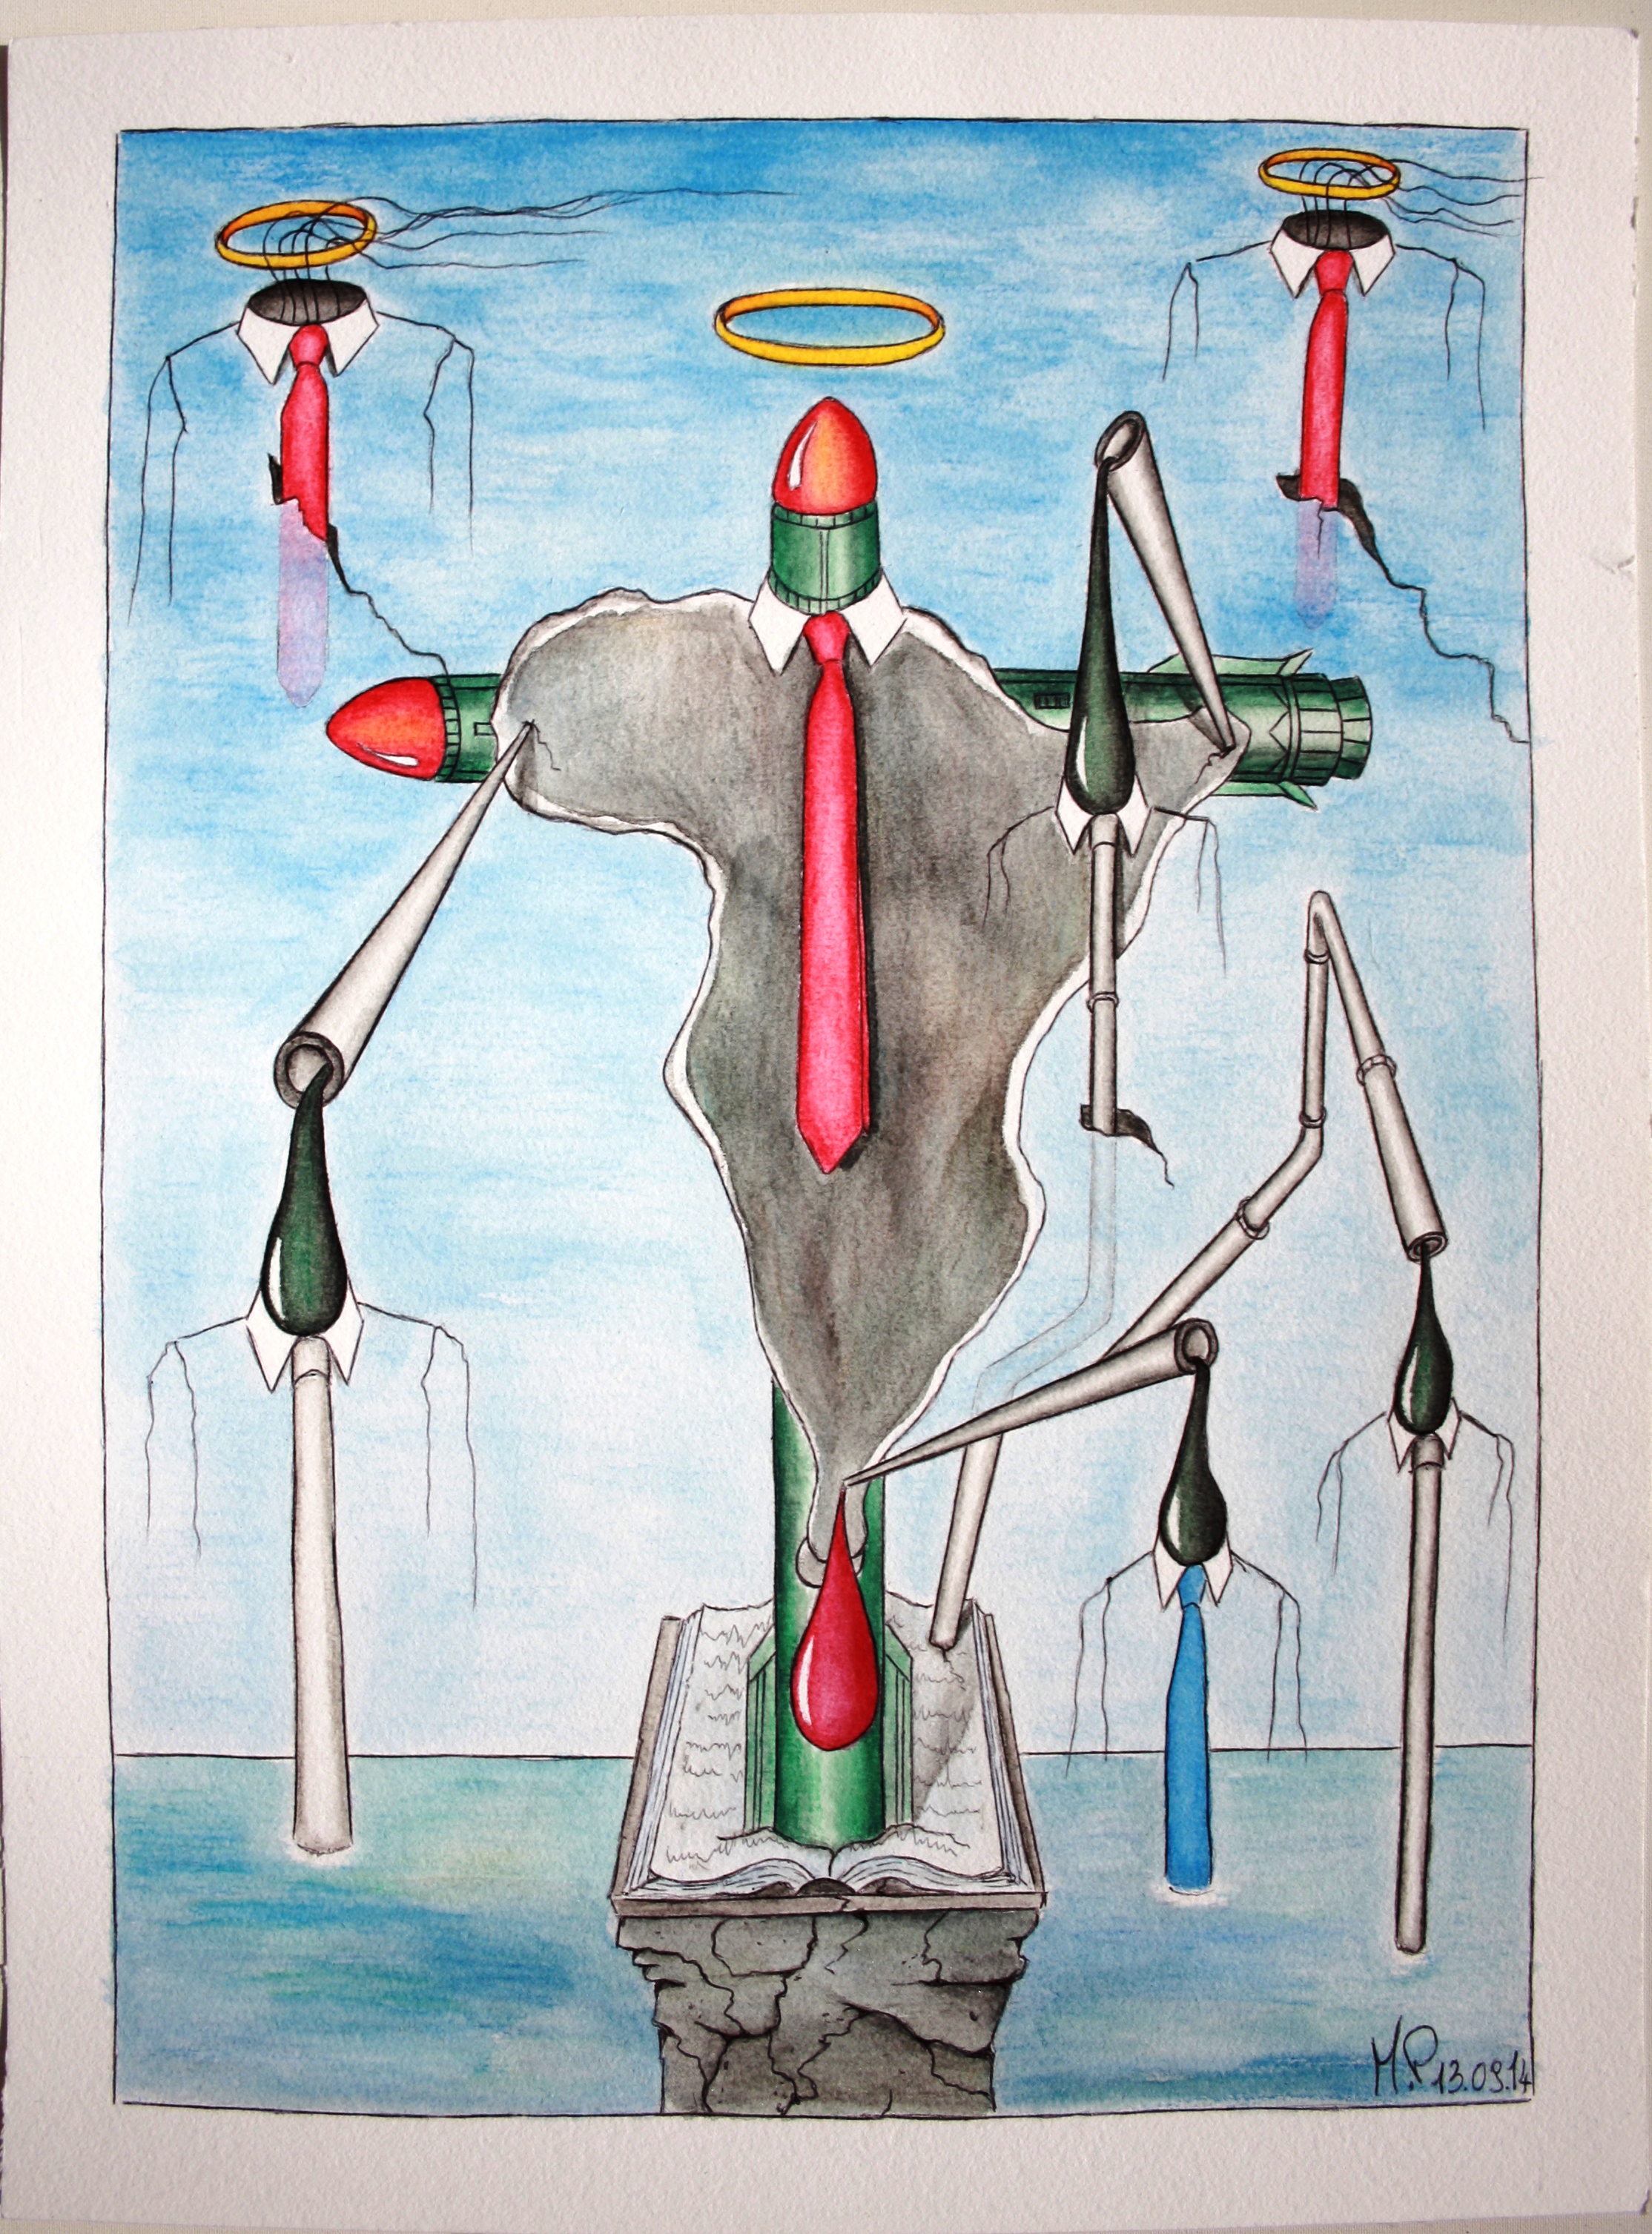 Crocifissione di un continente(Crucifixion of a continent), 2014 disegno a penna e acquerello (drawing in pen and watercolor) , Pasquale Mastrogiacomo, Acerno (SA).